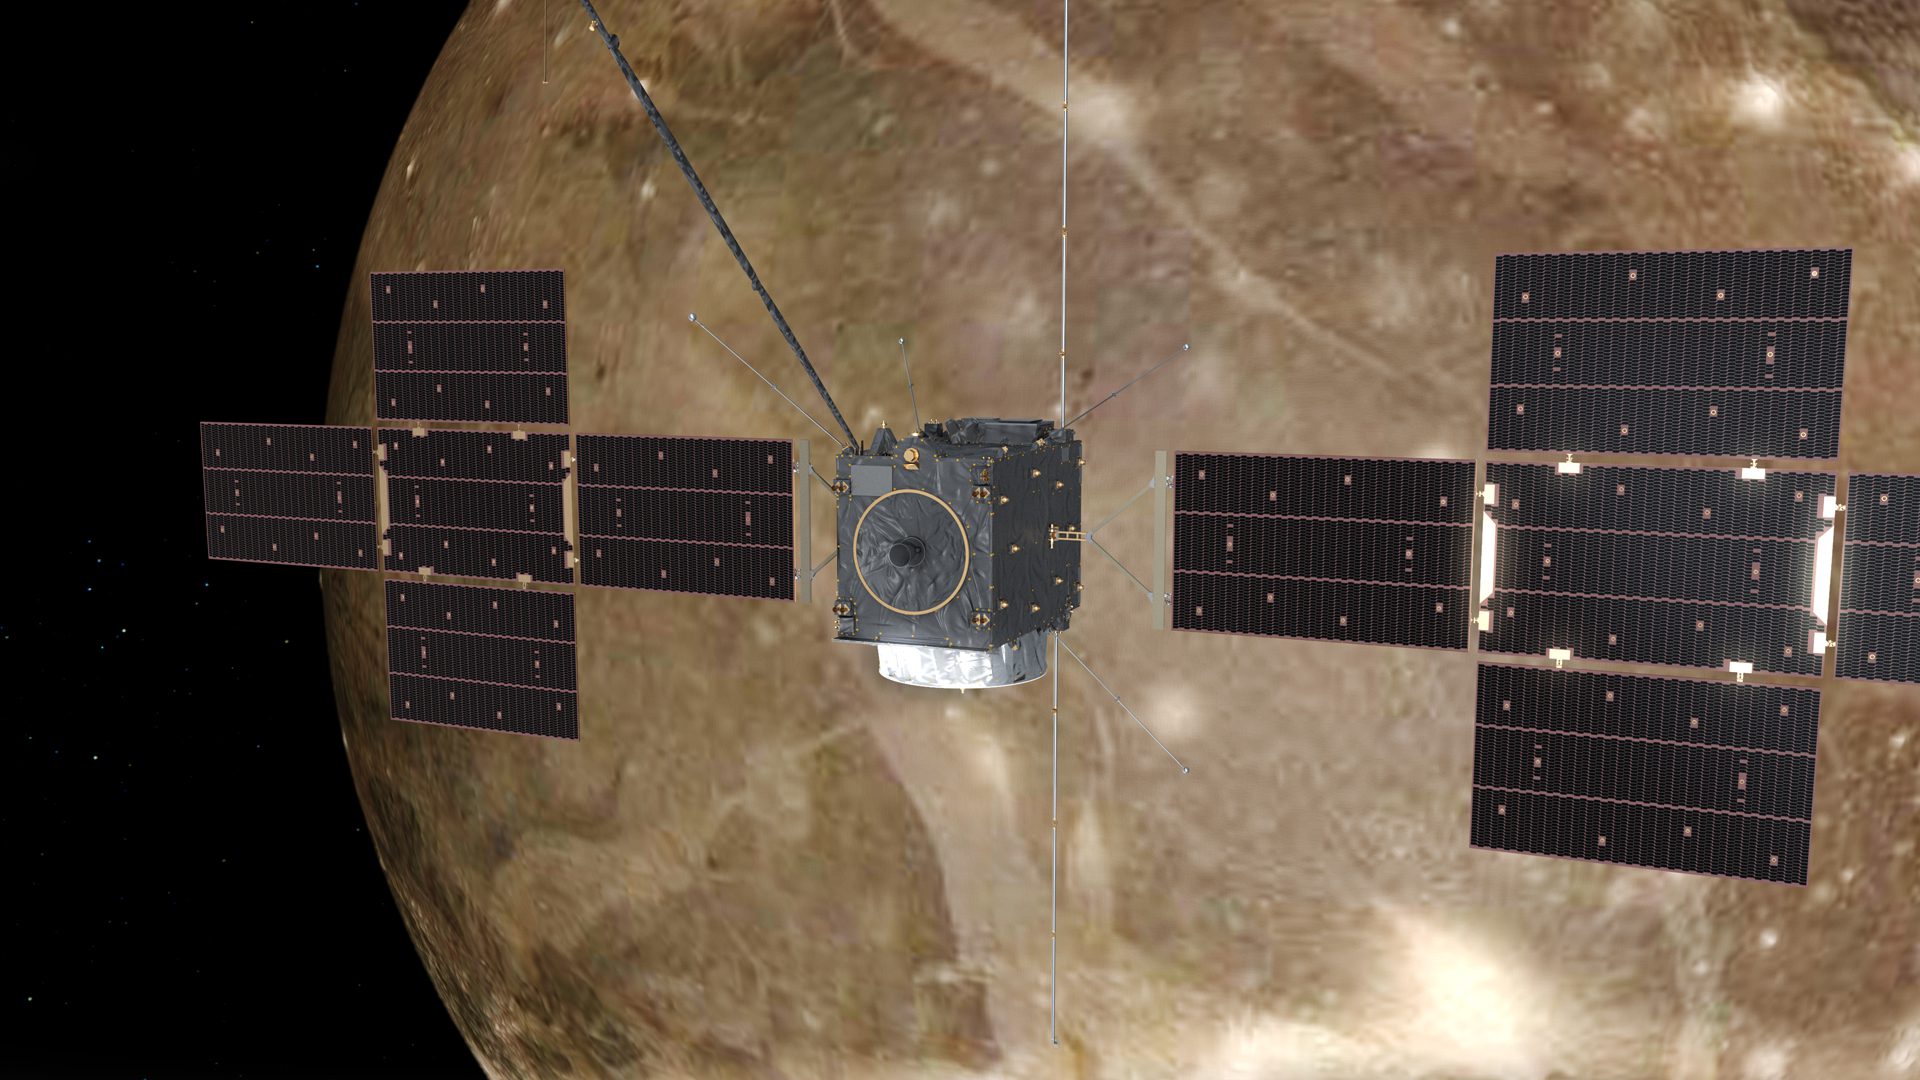 The European Space Agency's (ESA) Juice spacecraft orbits Jupiter's moon Ganymede.